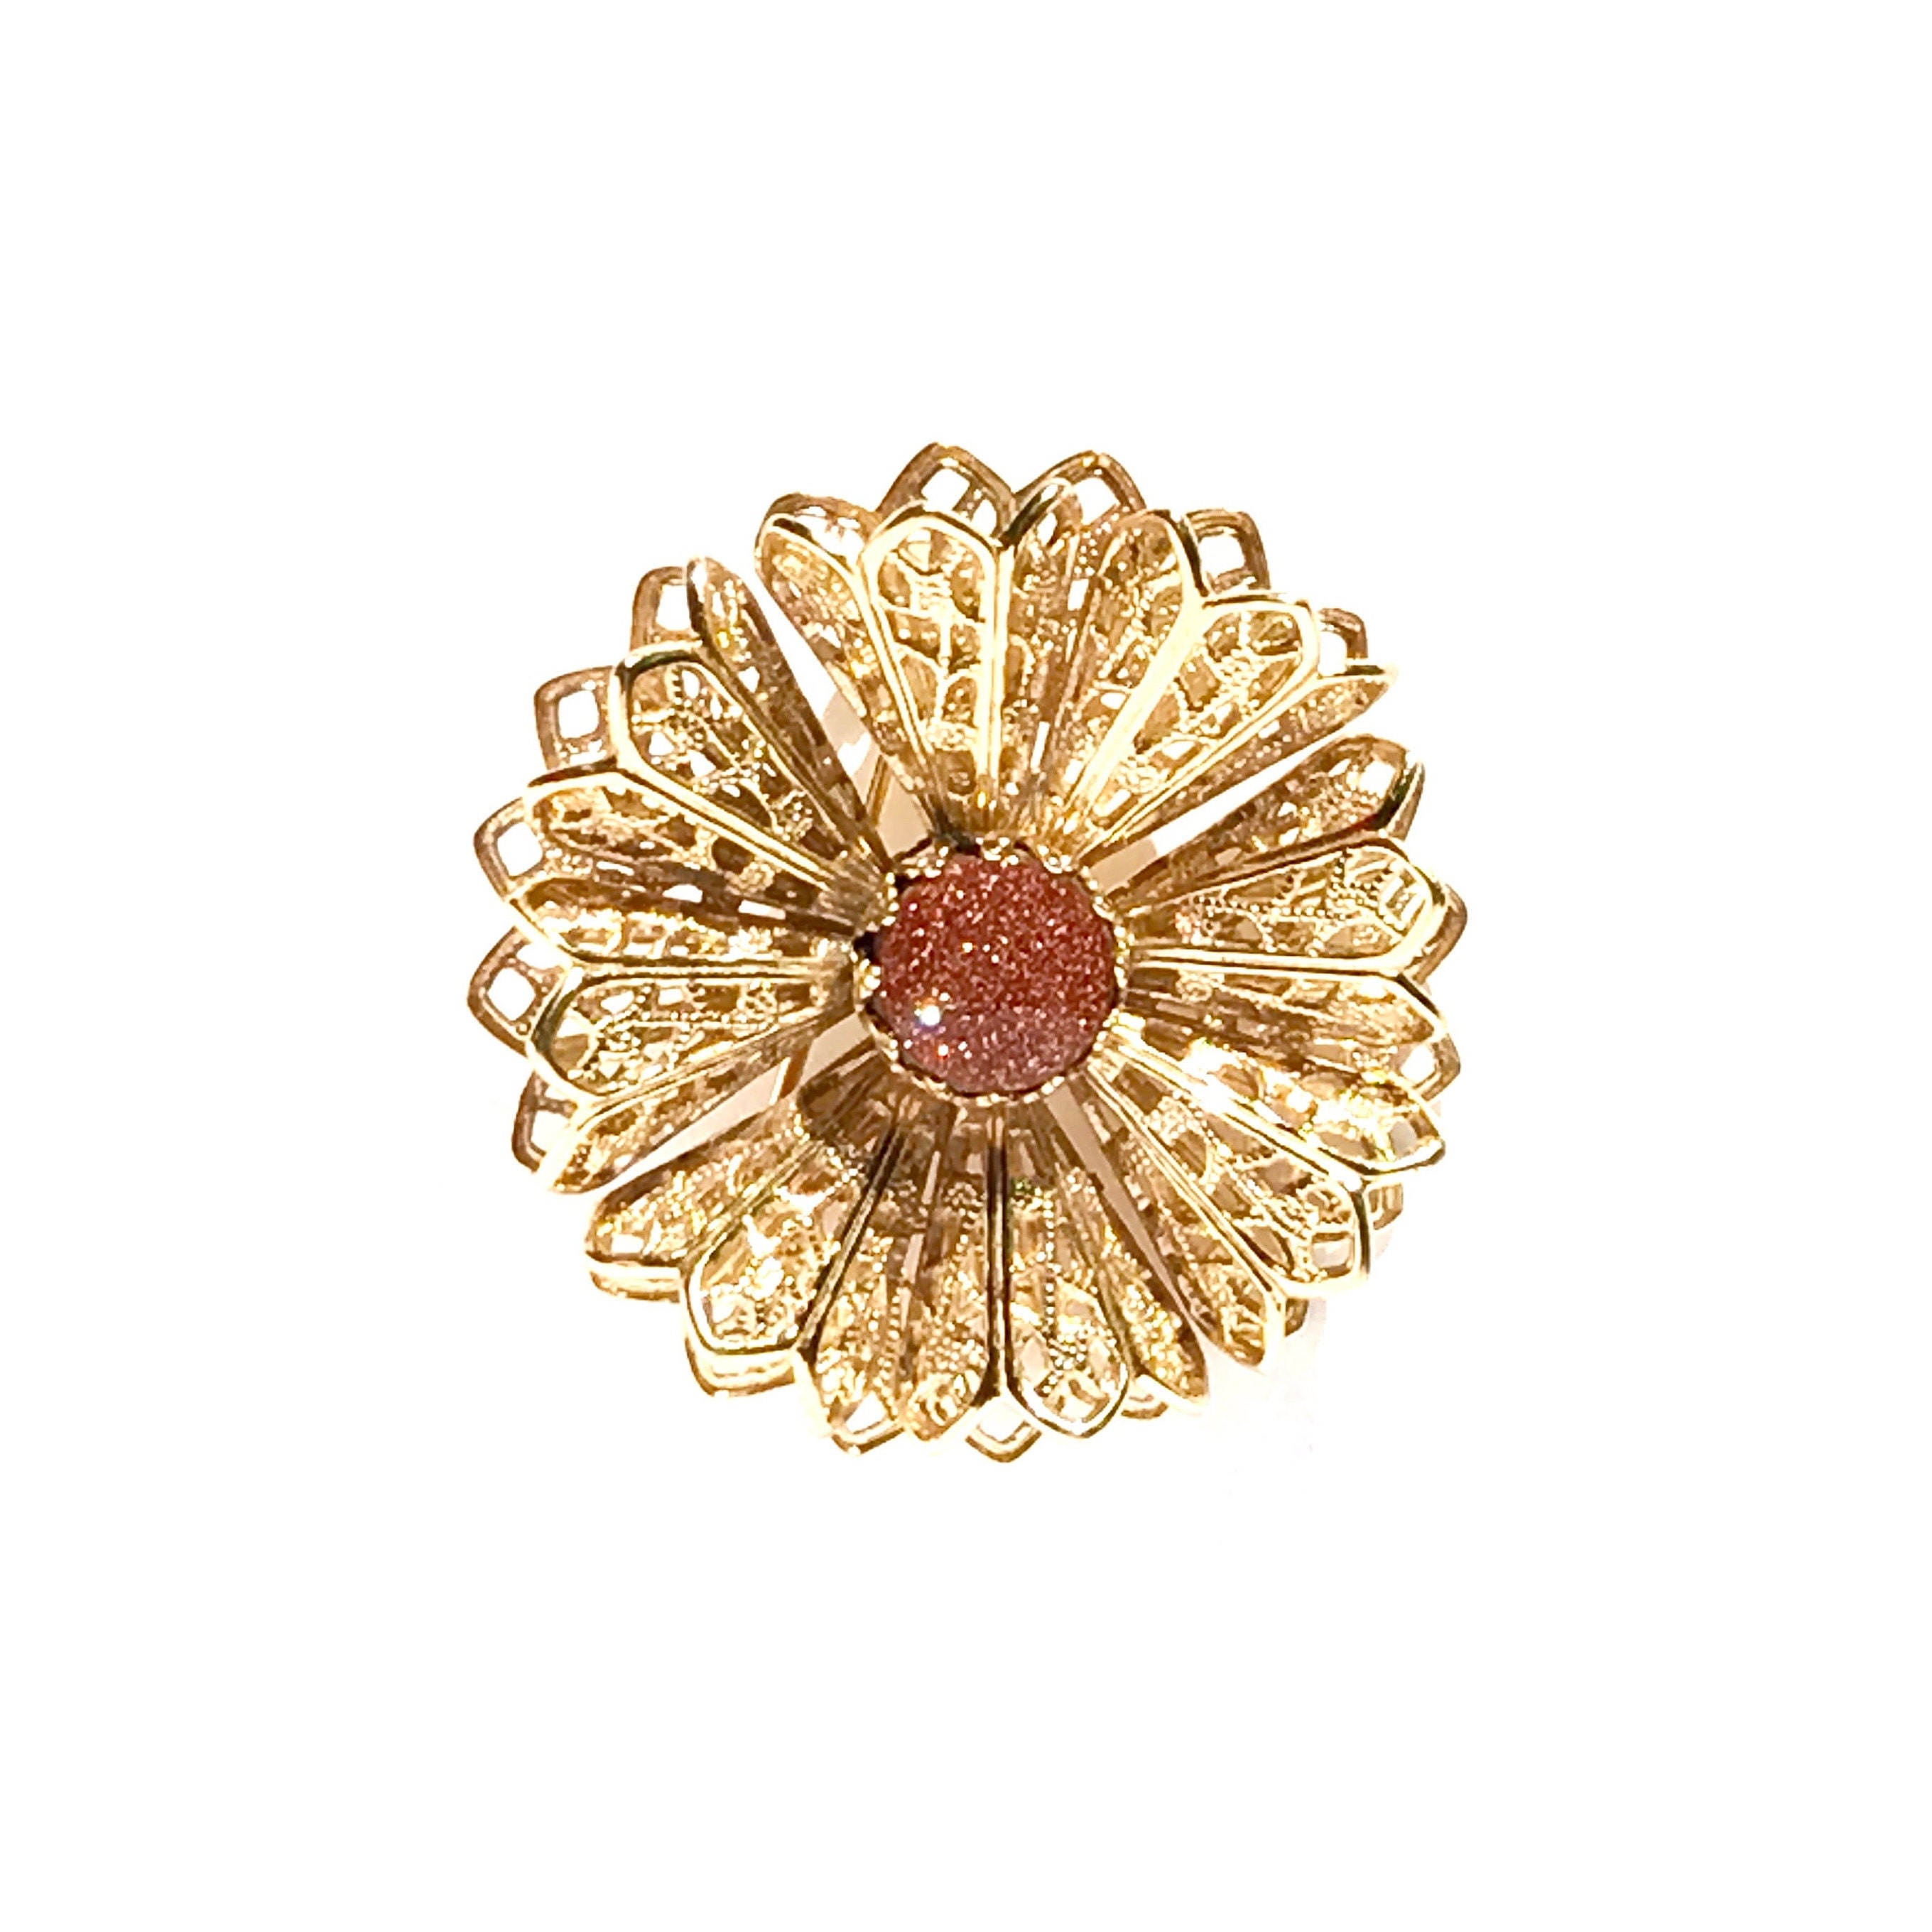 Filigree Goldstone Brooch Vintage Flower Pin | Etsy